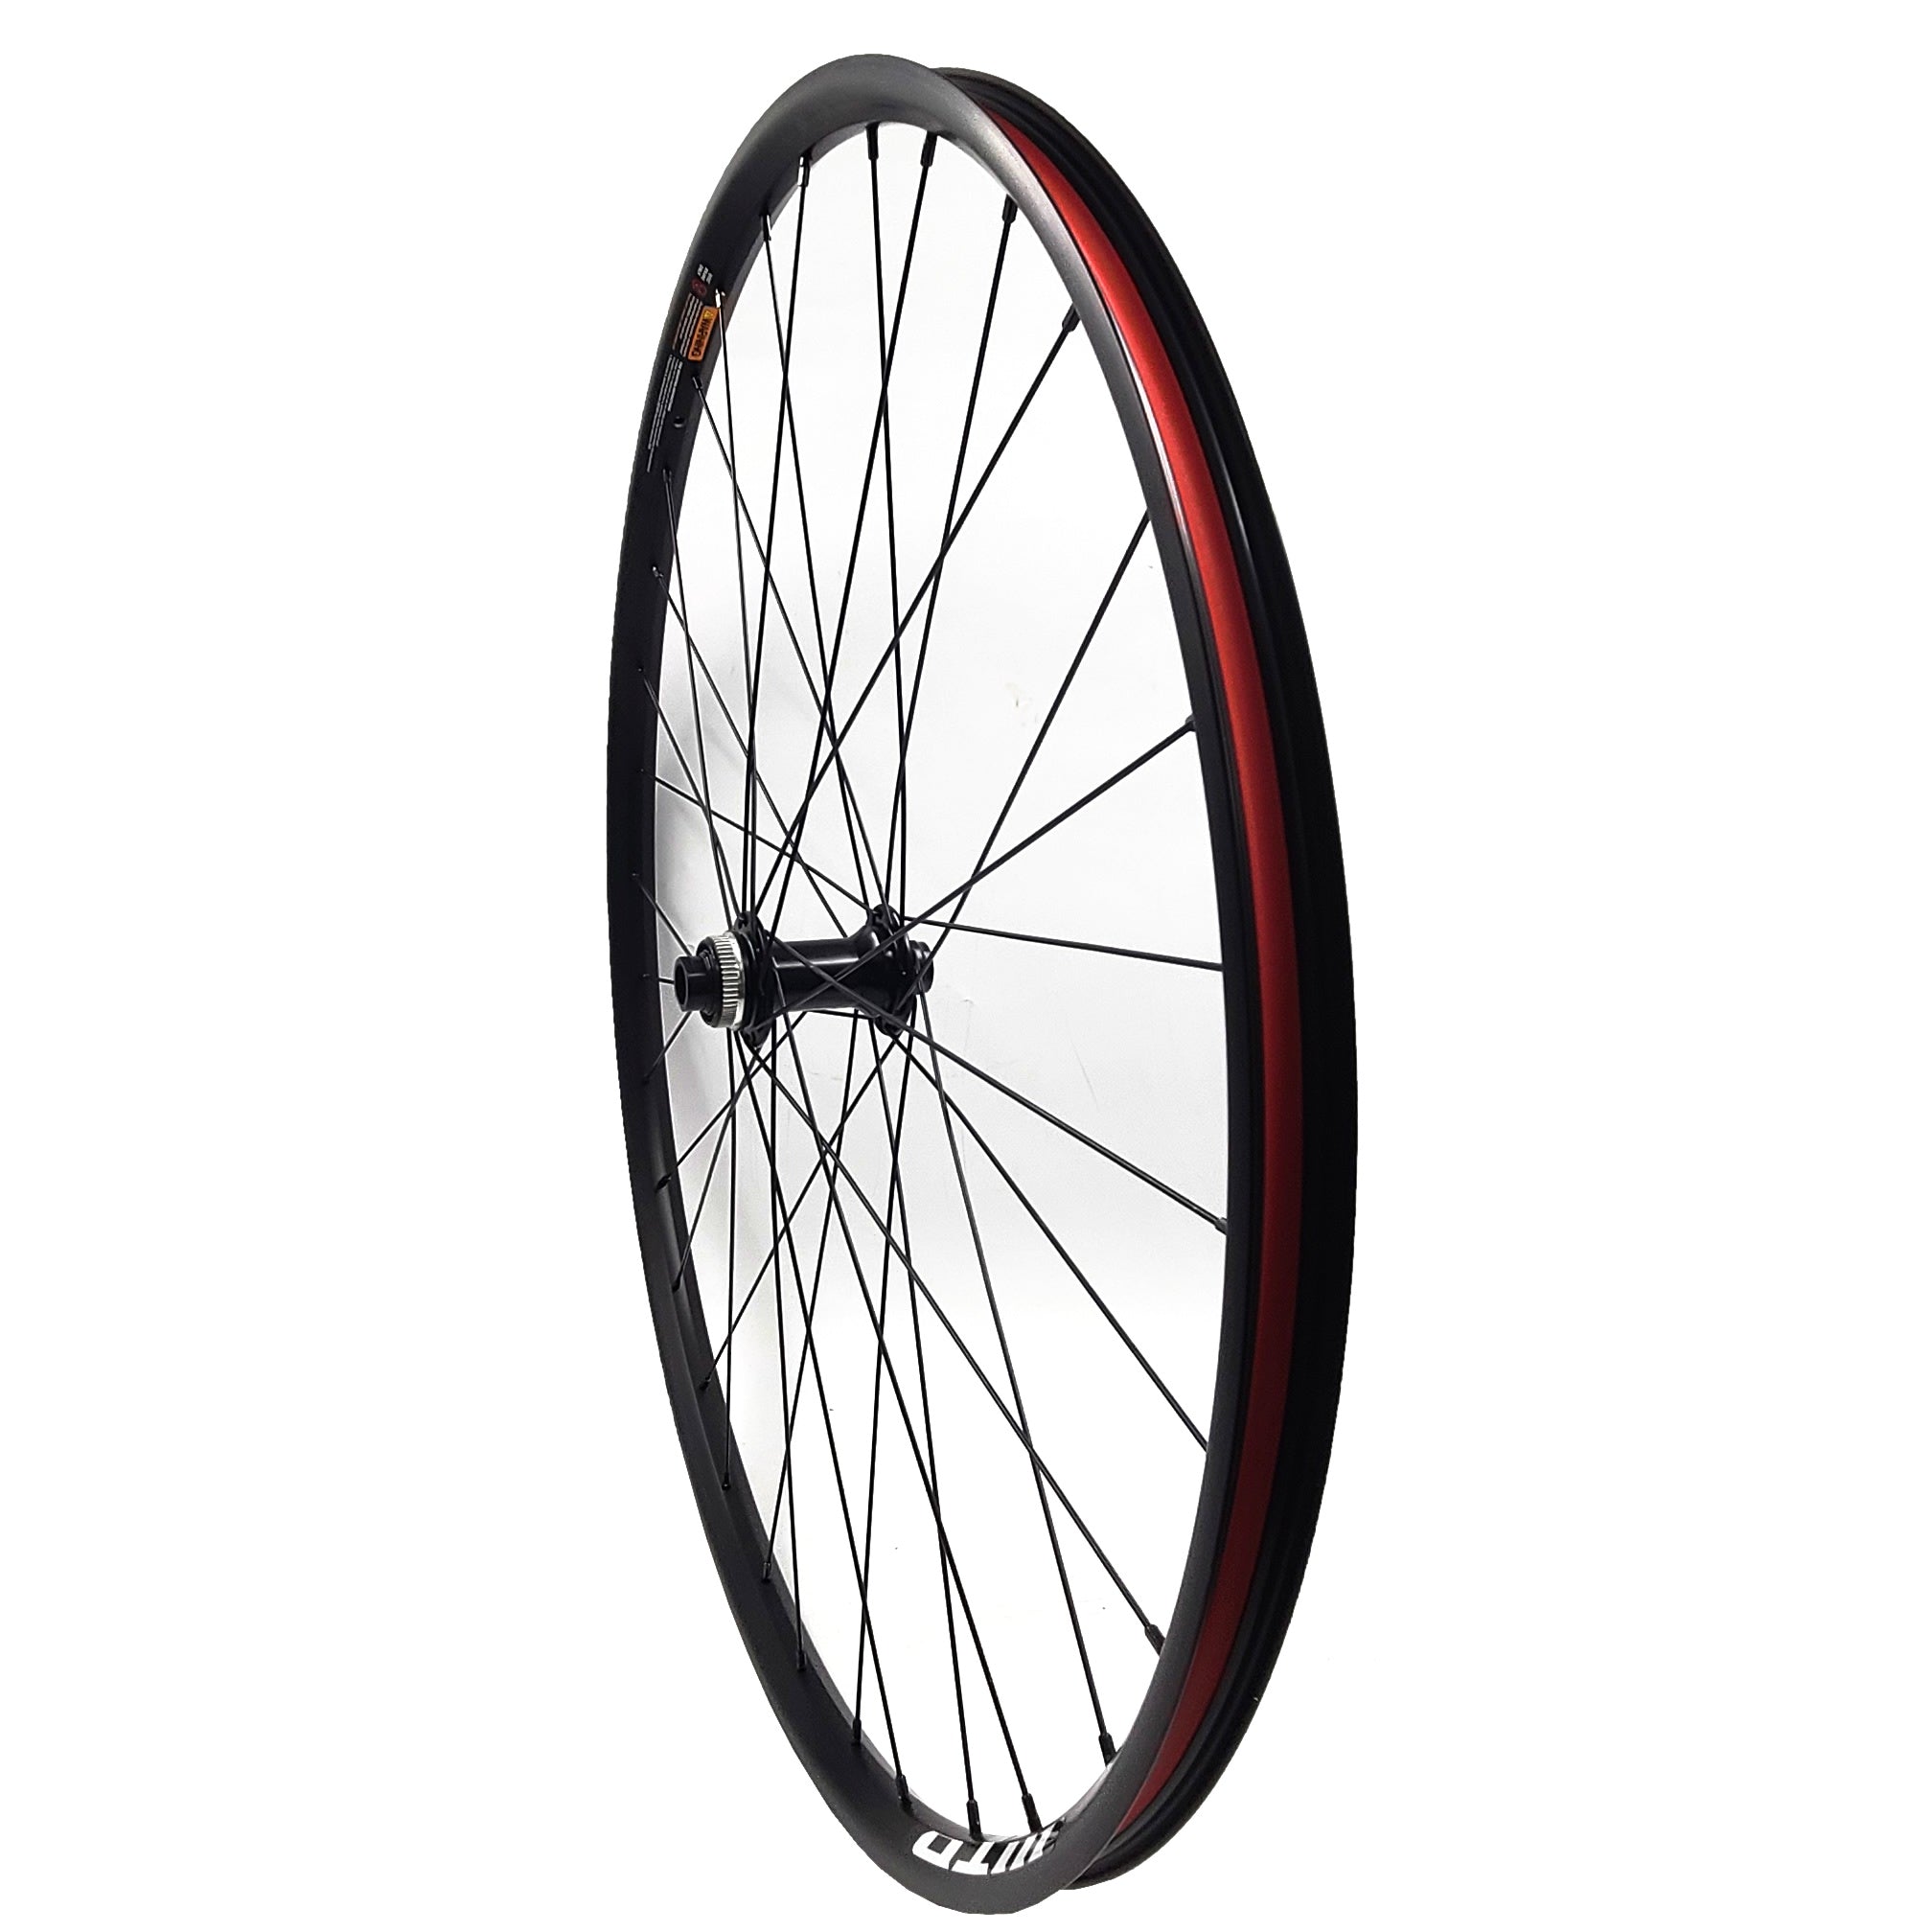 WTB STi23 29" Tubeless Centerlock Disc Brake and Thru Axle Front Wheel - The Bikesmiths